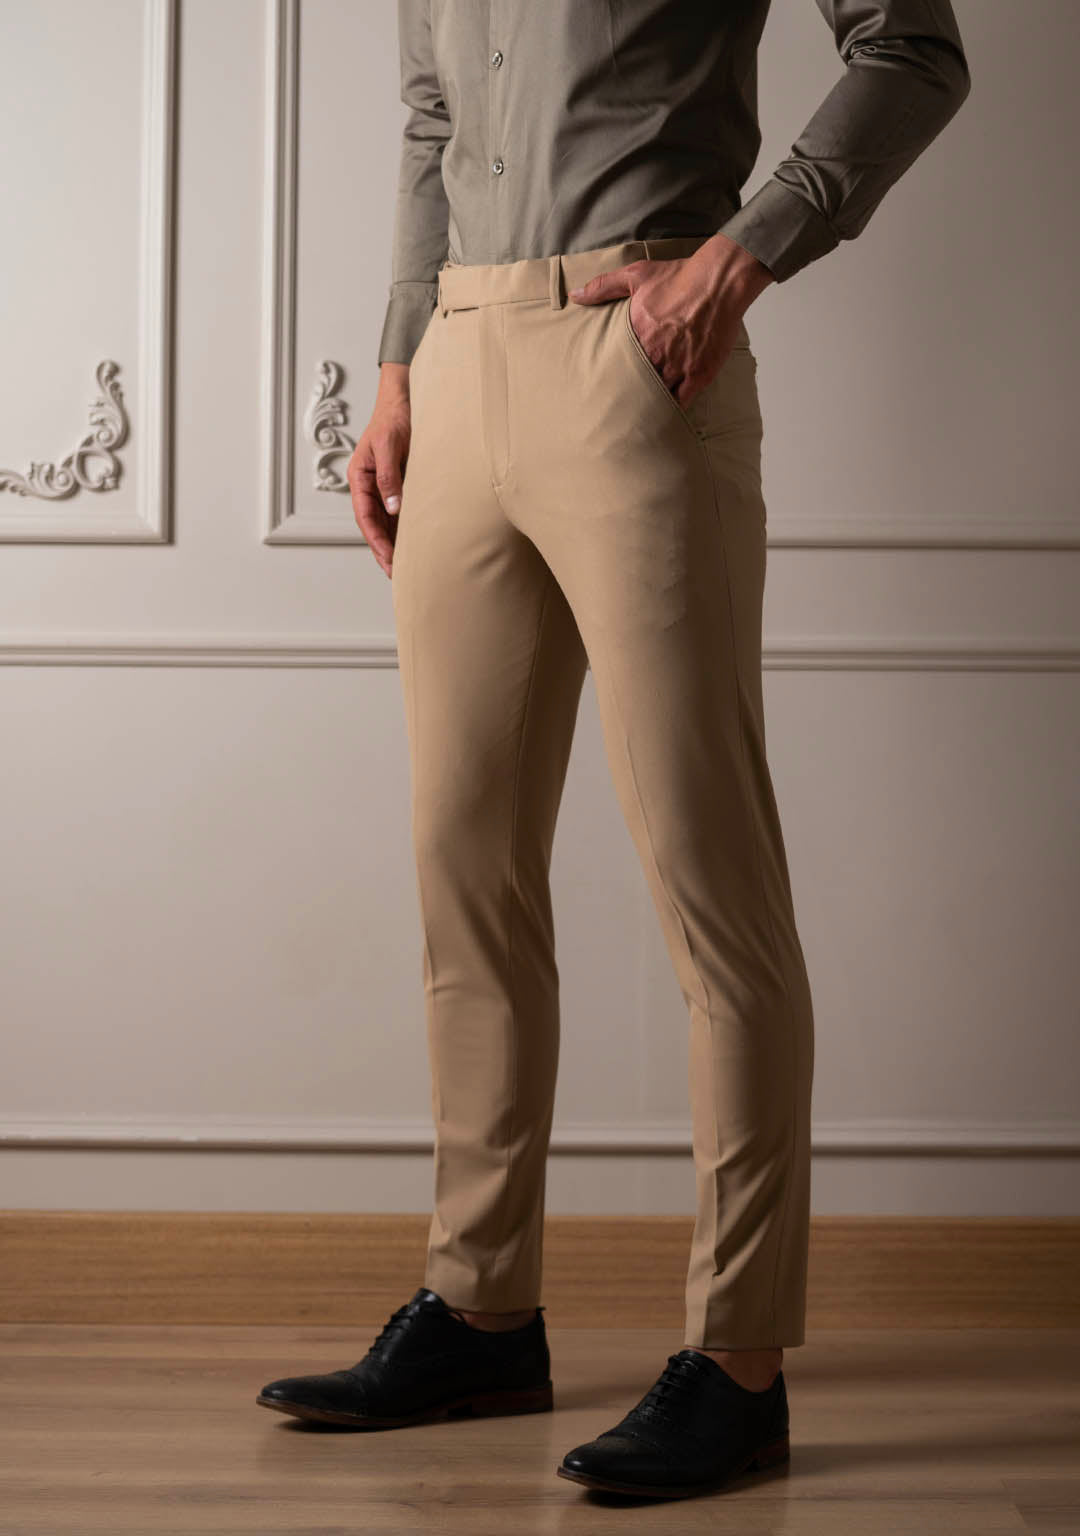 Buy Khaki Trousers & Pants for Men by BLACKBERRYS Online | Ajio.com